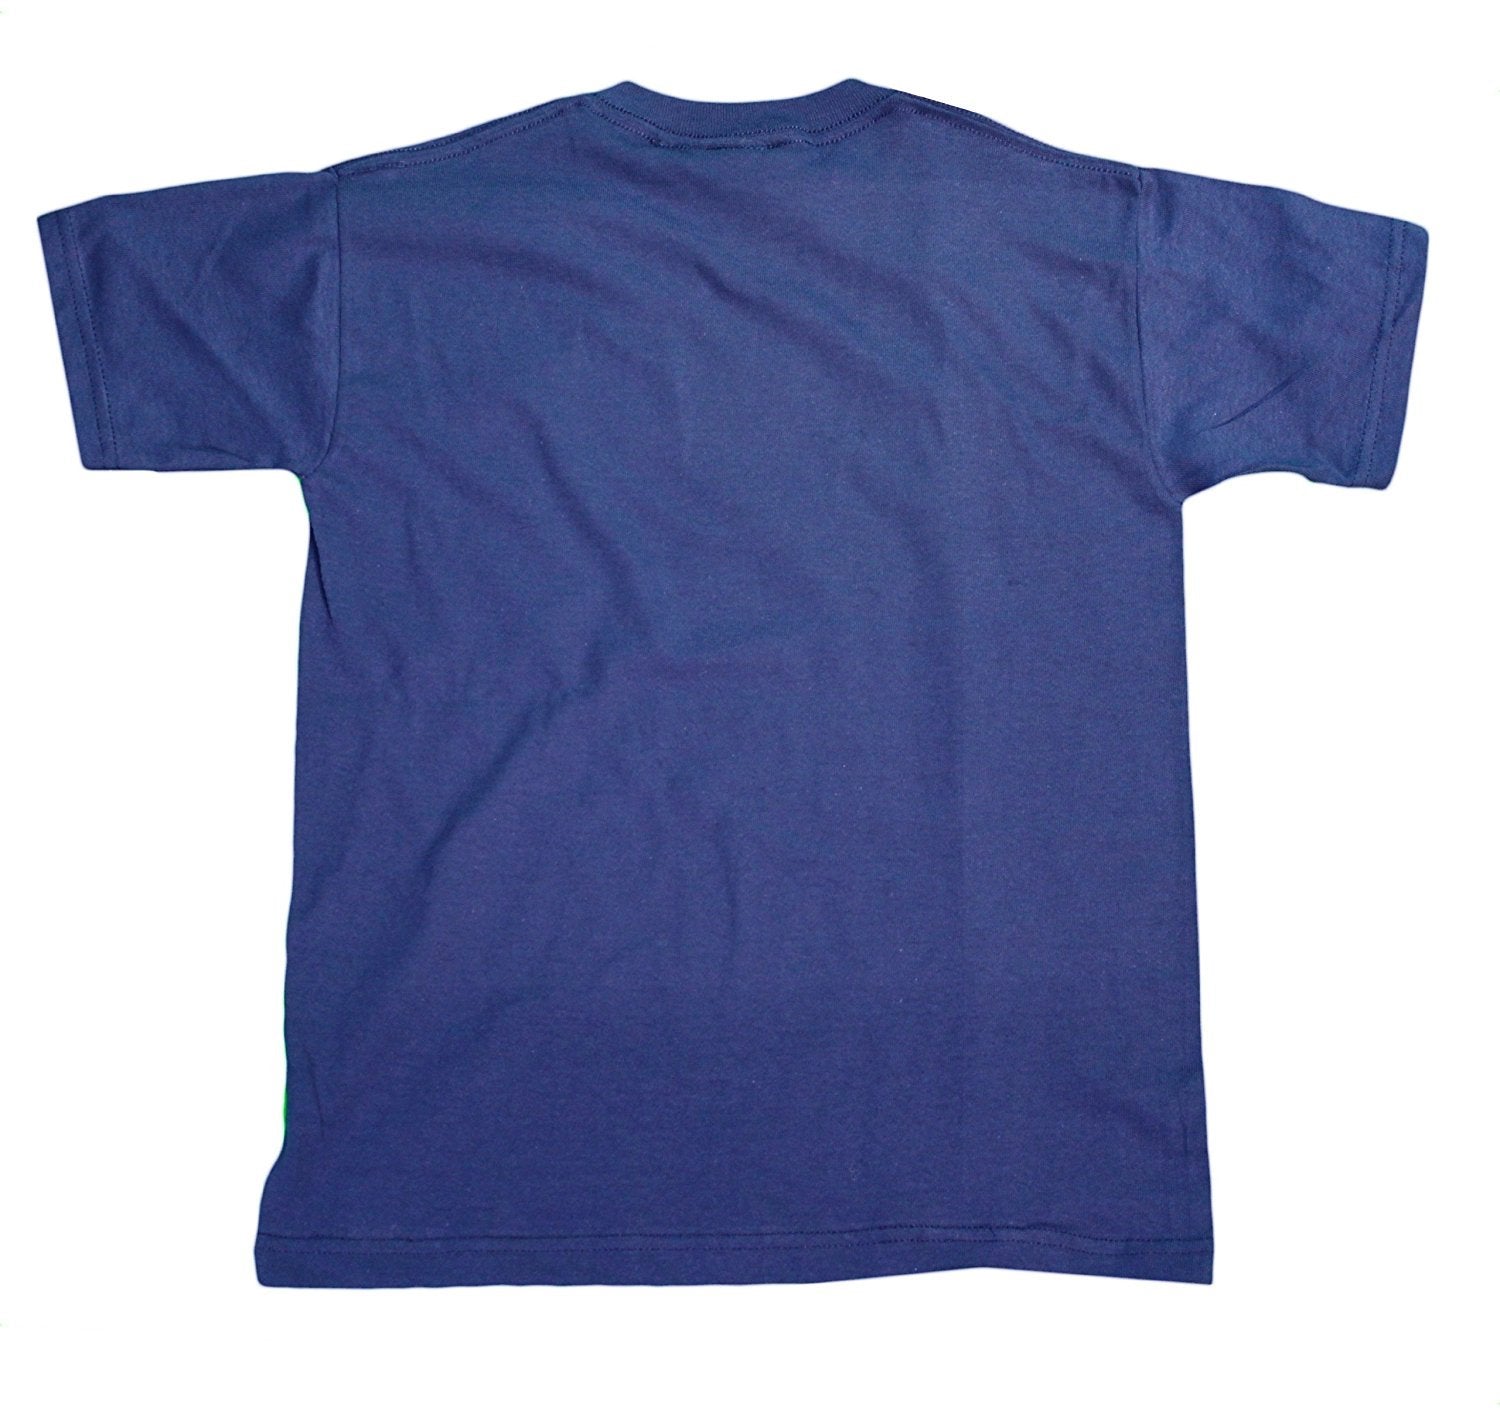 FDNY Kinder-T-Shirt, offiziell lizenziert (Jugend, Navy/Weiß)